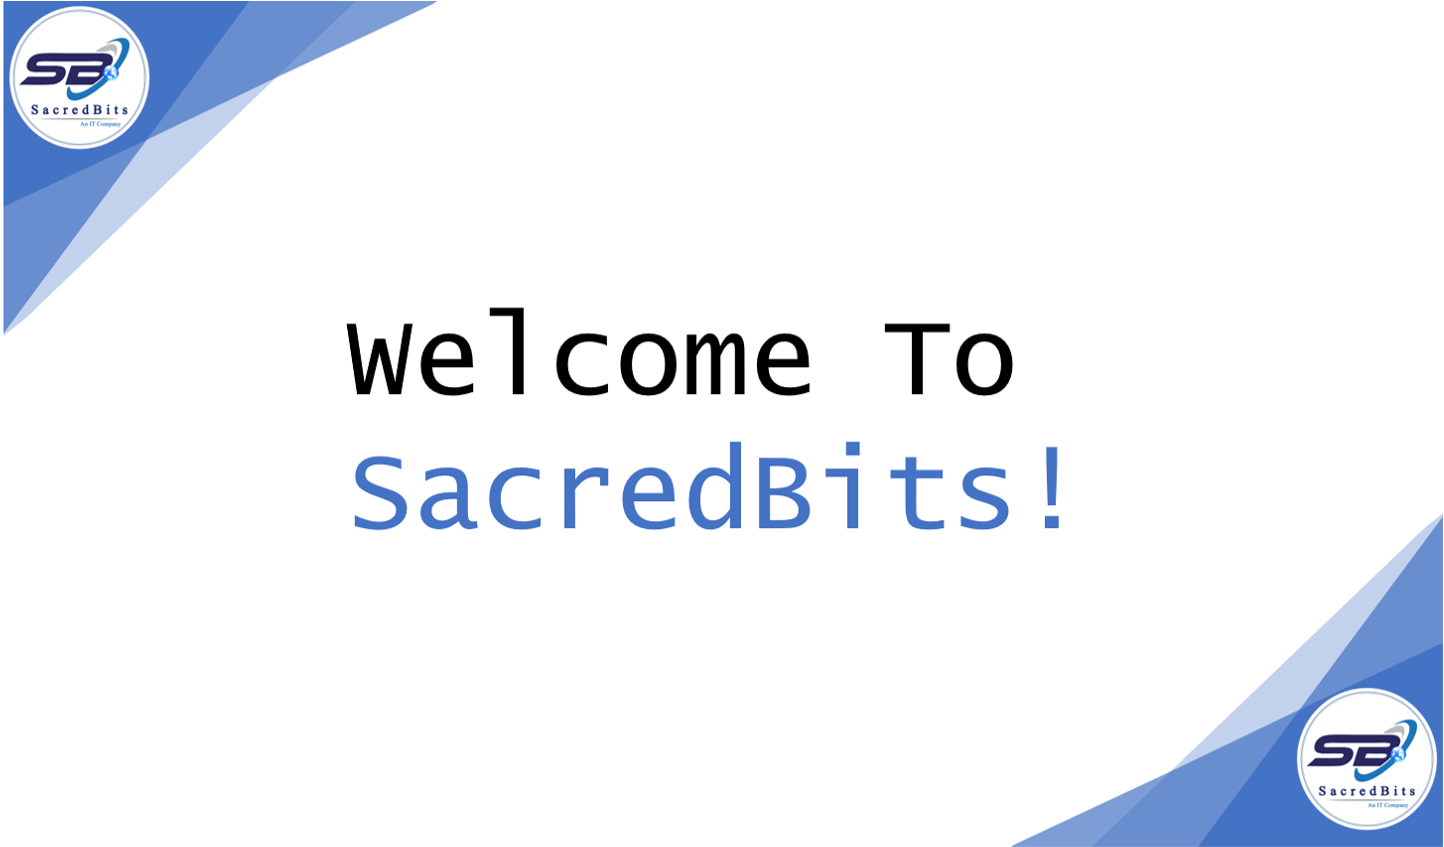 About SacredBits